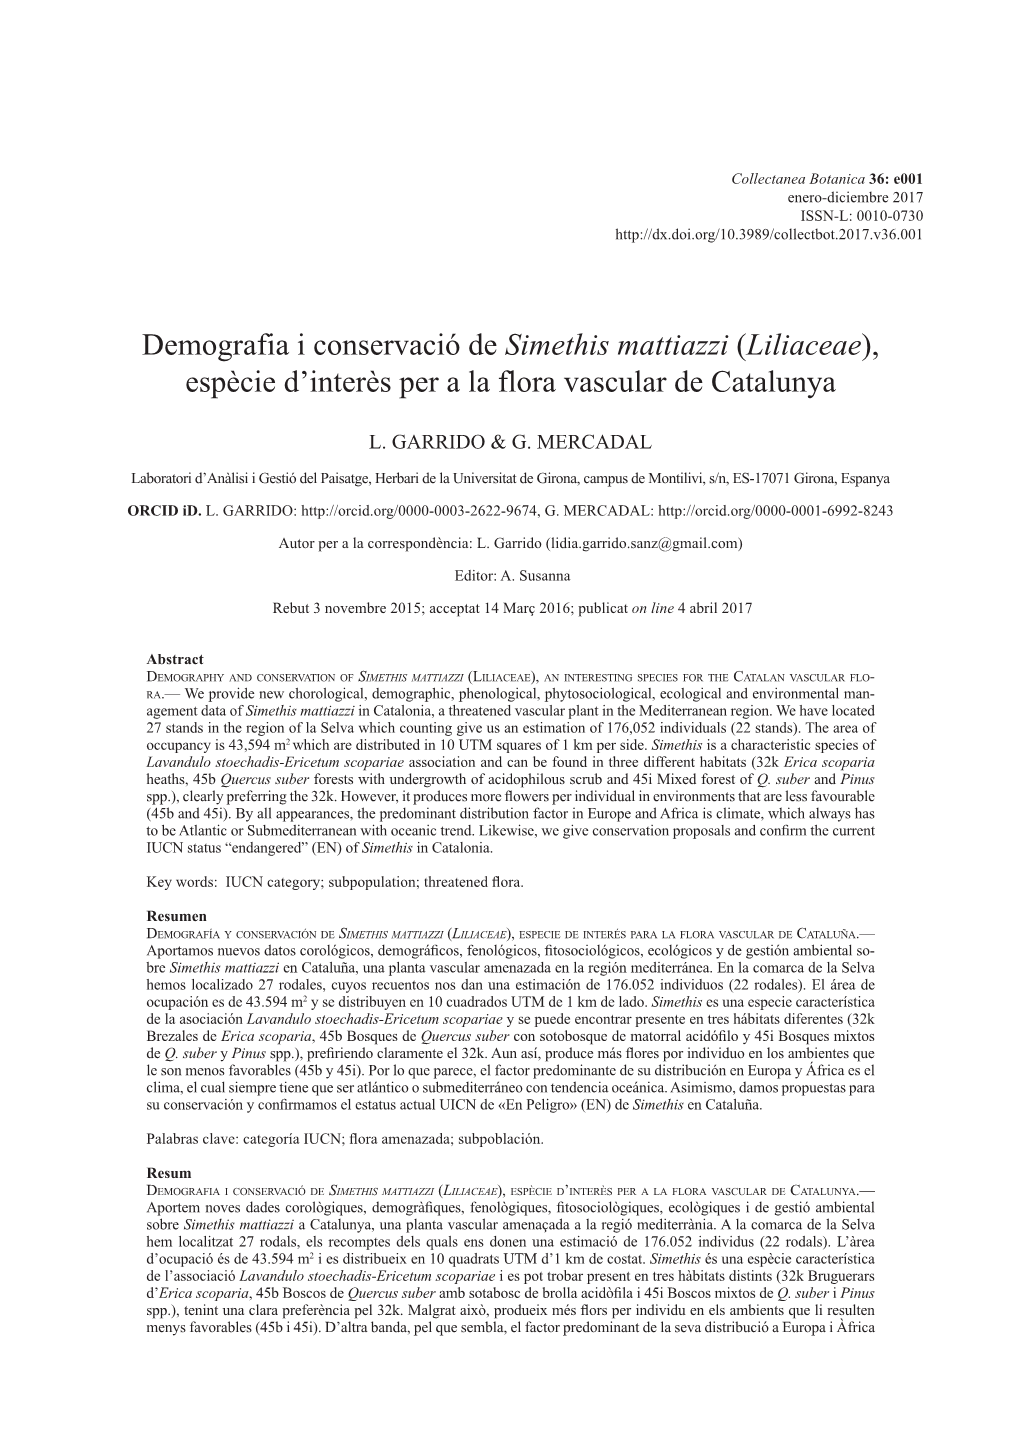 Demografia I Conservació De Simethis Mattiazzi (Liliaceae), Espècie D'interès Per a La Flora Vascular De Catalunya